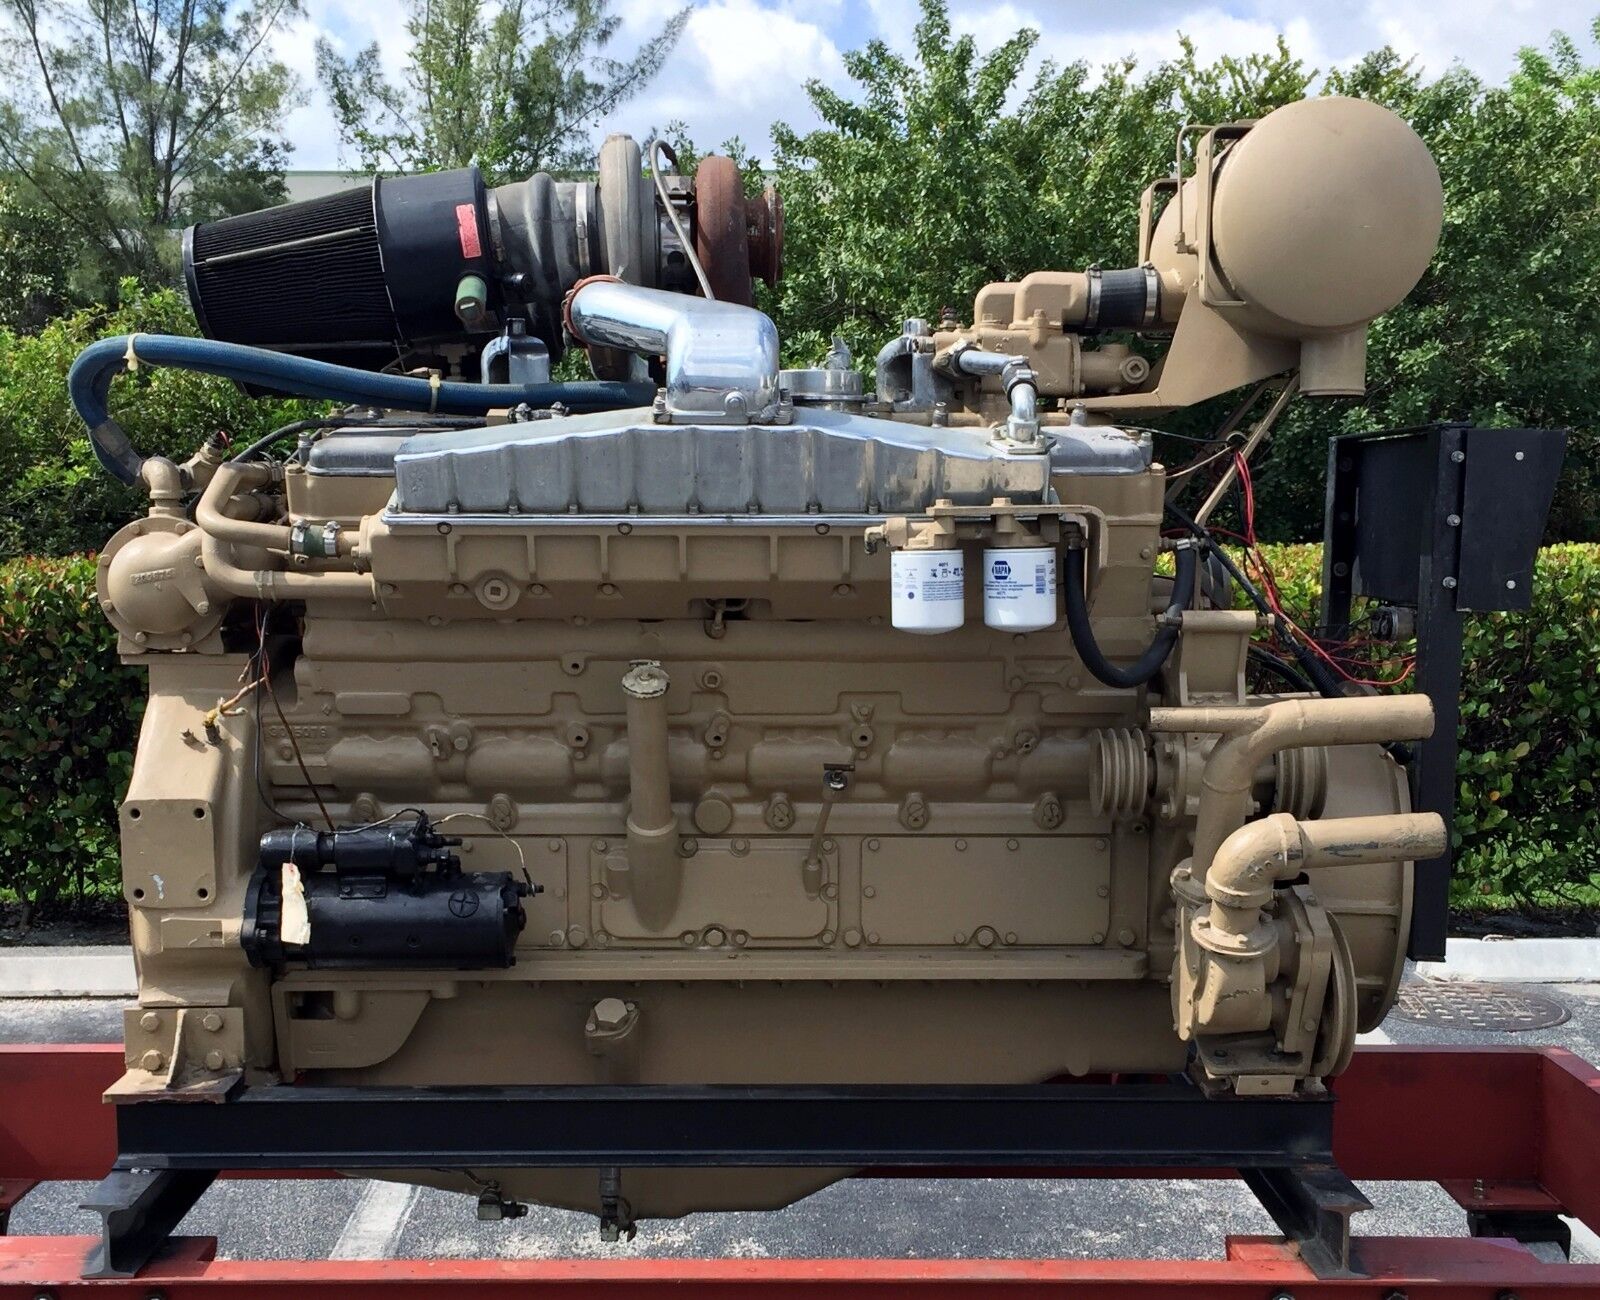 Cummins VTA-1710-M2, Marine Diesel Engine, 690 HP @ 2100 RPM